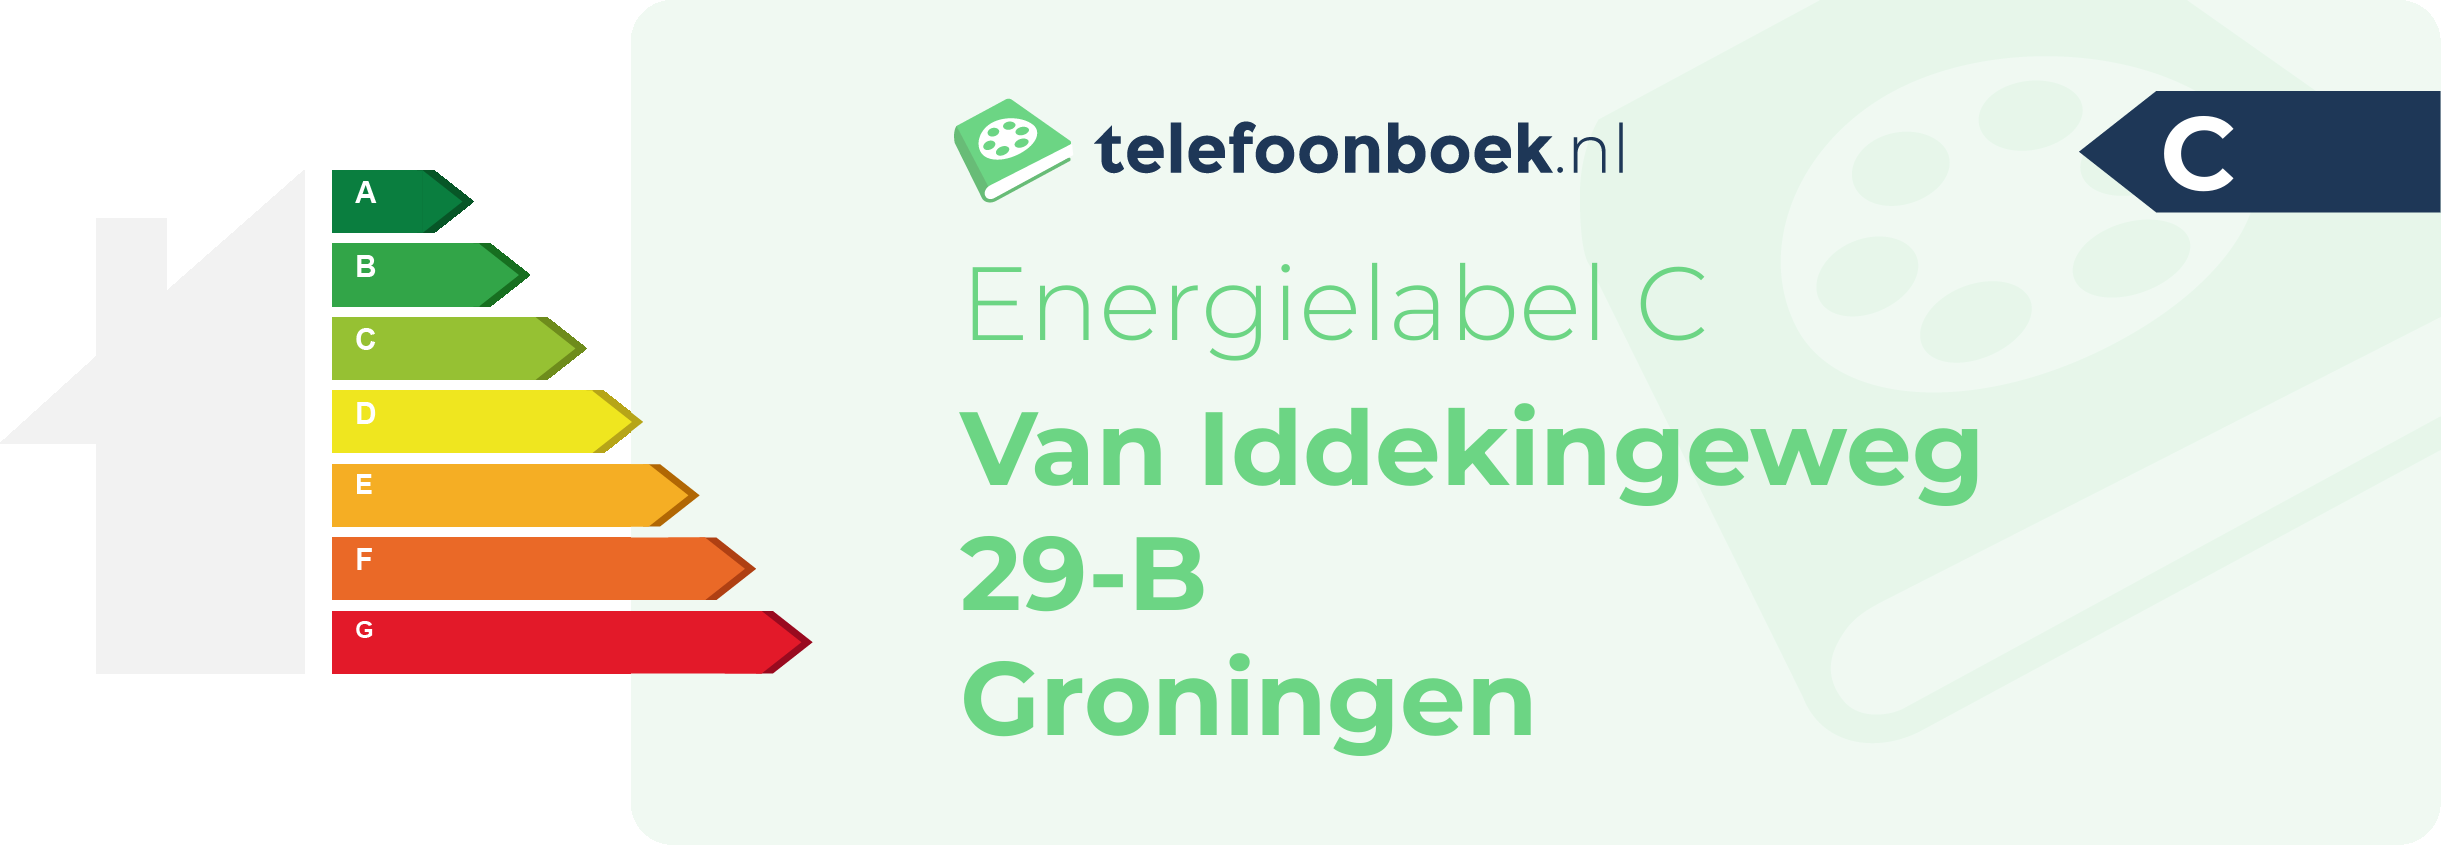 Energielabel Van Iddekingeweg 29-B Groningen